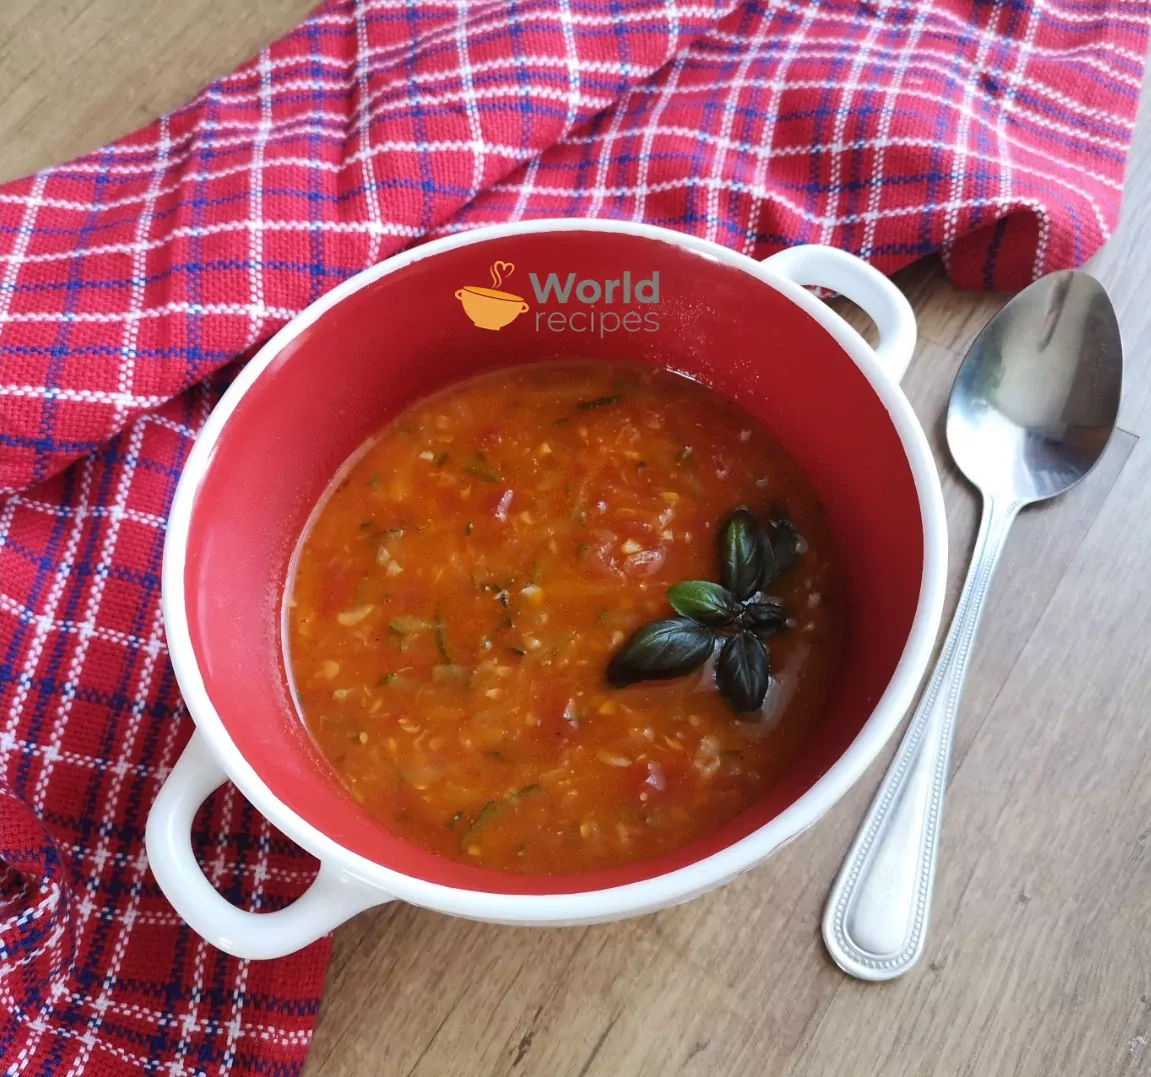 Aštri pomidorų ir cukinijų sriuba su ryžiais ir morkomis